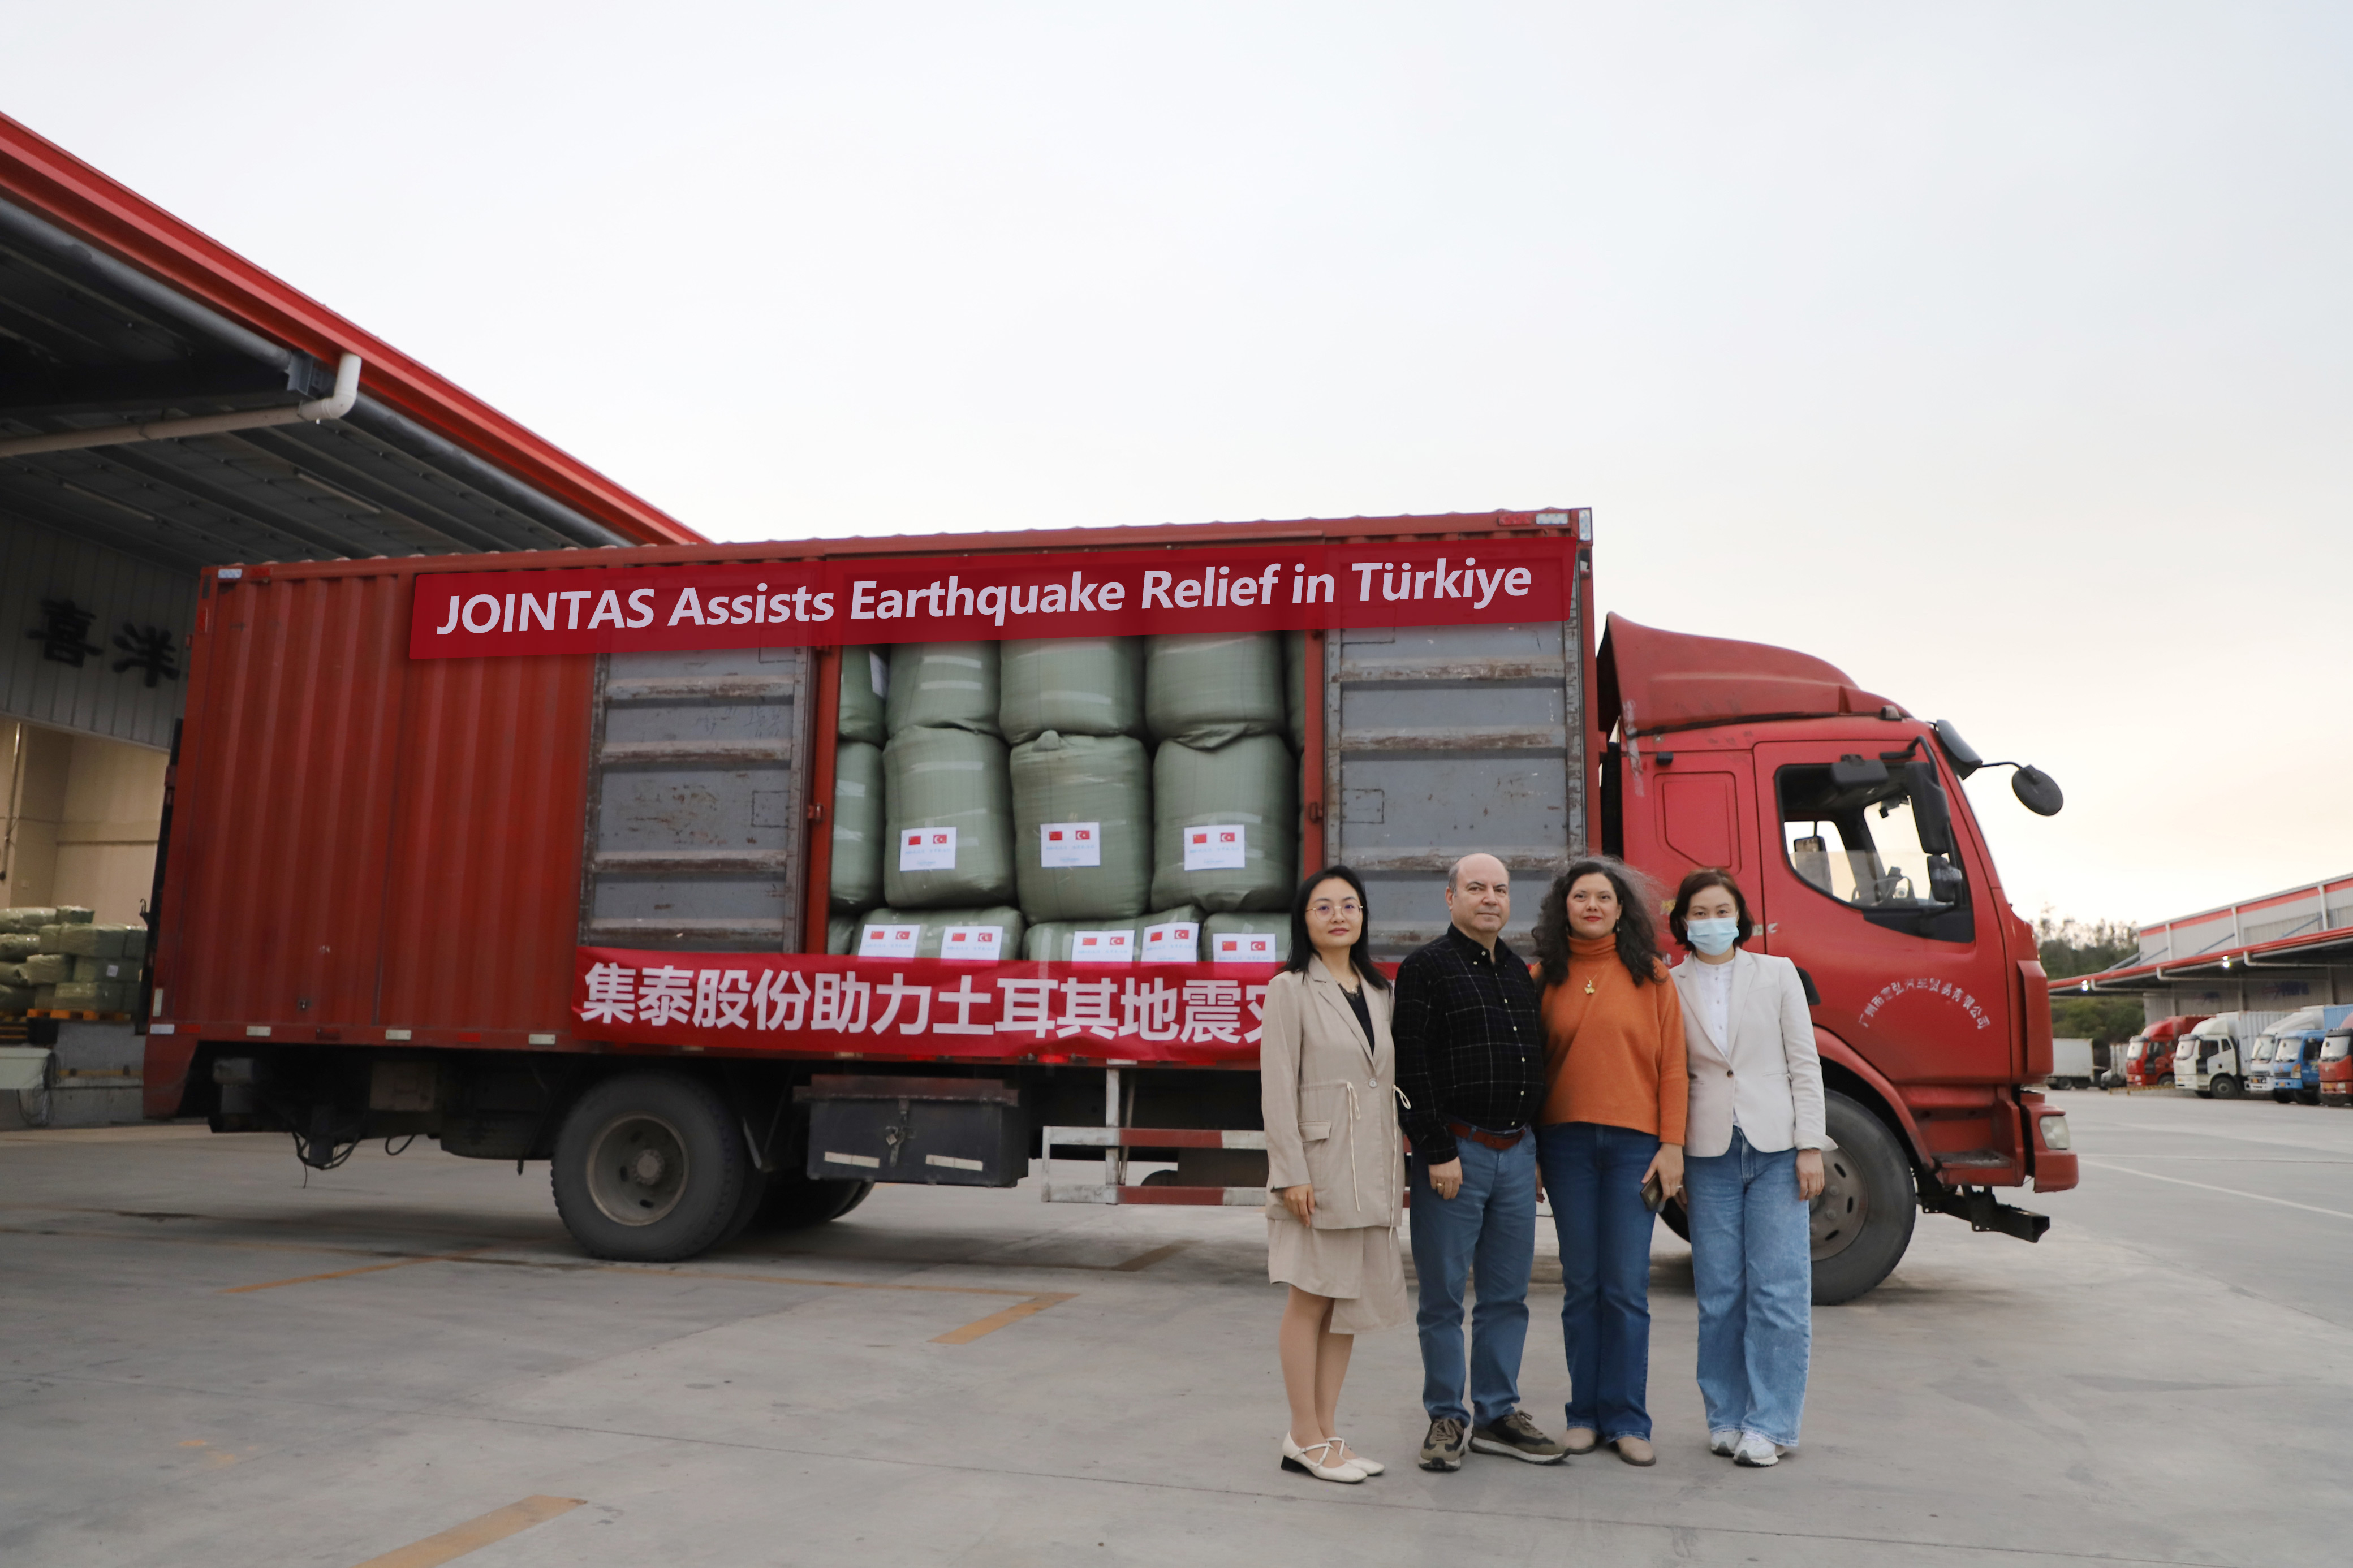 الوقوف جنبا إلى جنب مع المساعدة المتبادلة من أجل مستقبل مشترك - تقدم JOINTAS مساعدات طارئة لتركيا التي ضربها الزلزال